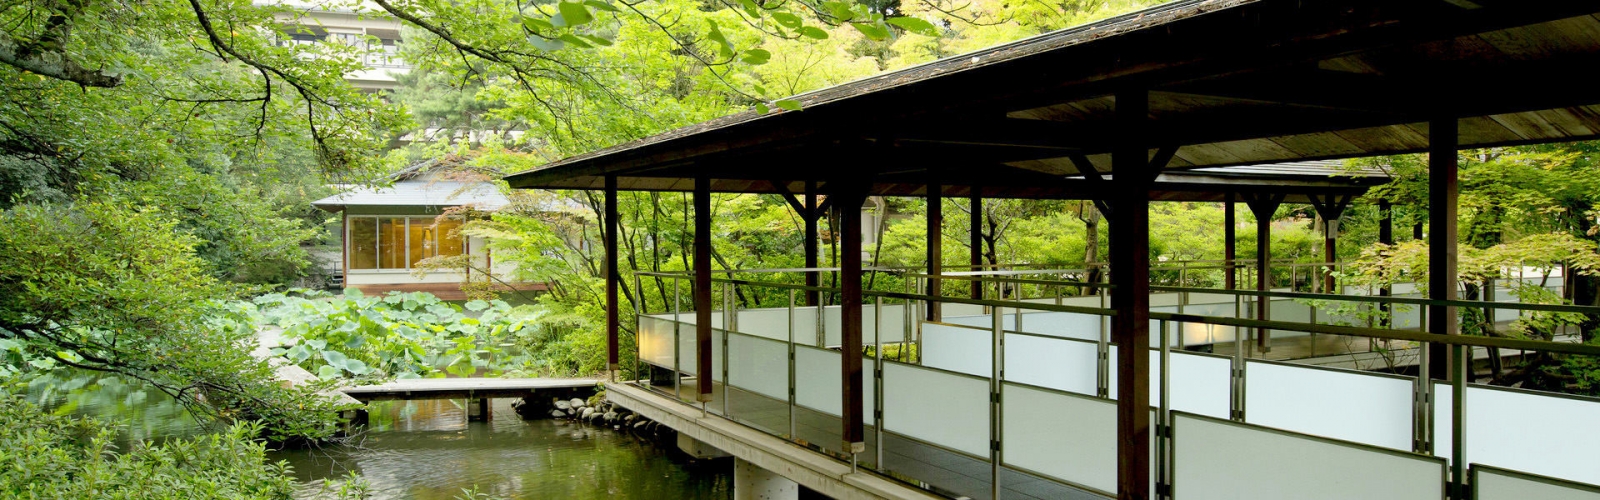 松崎是辰口溫泉的代表旅館。